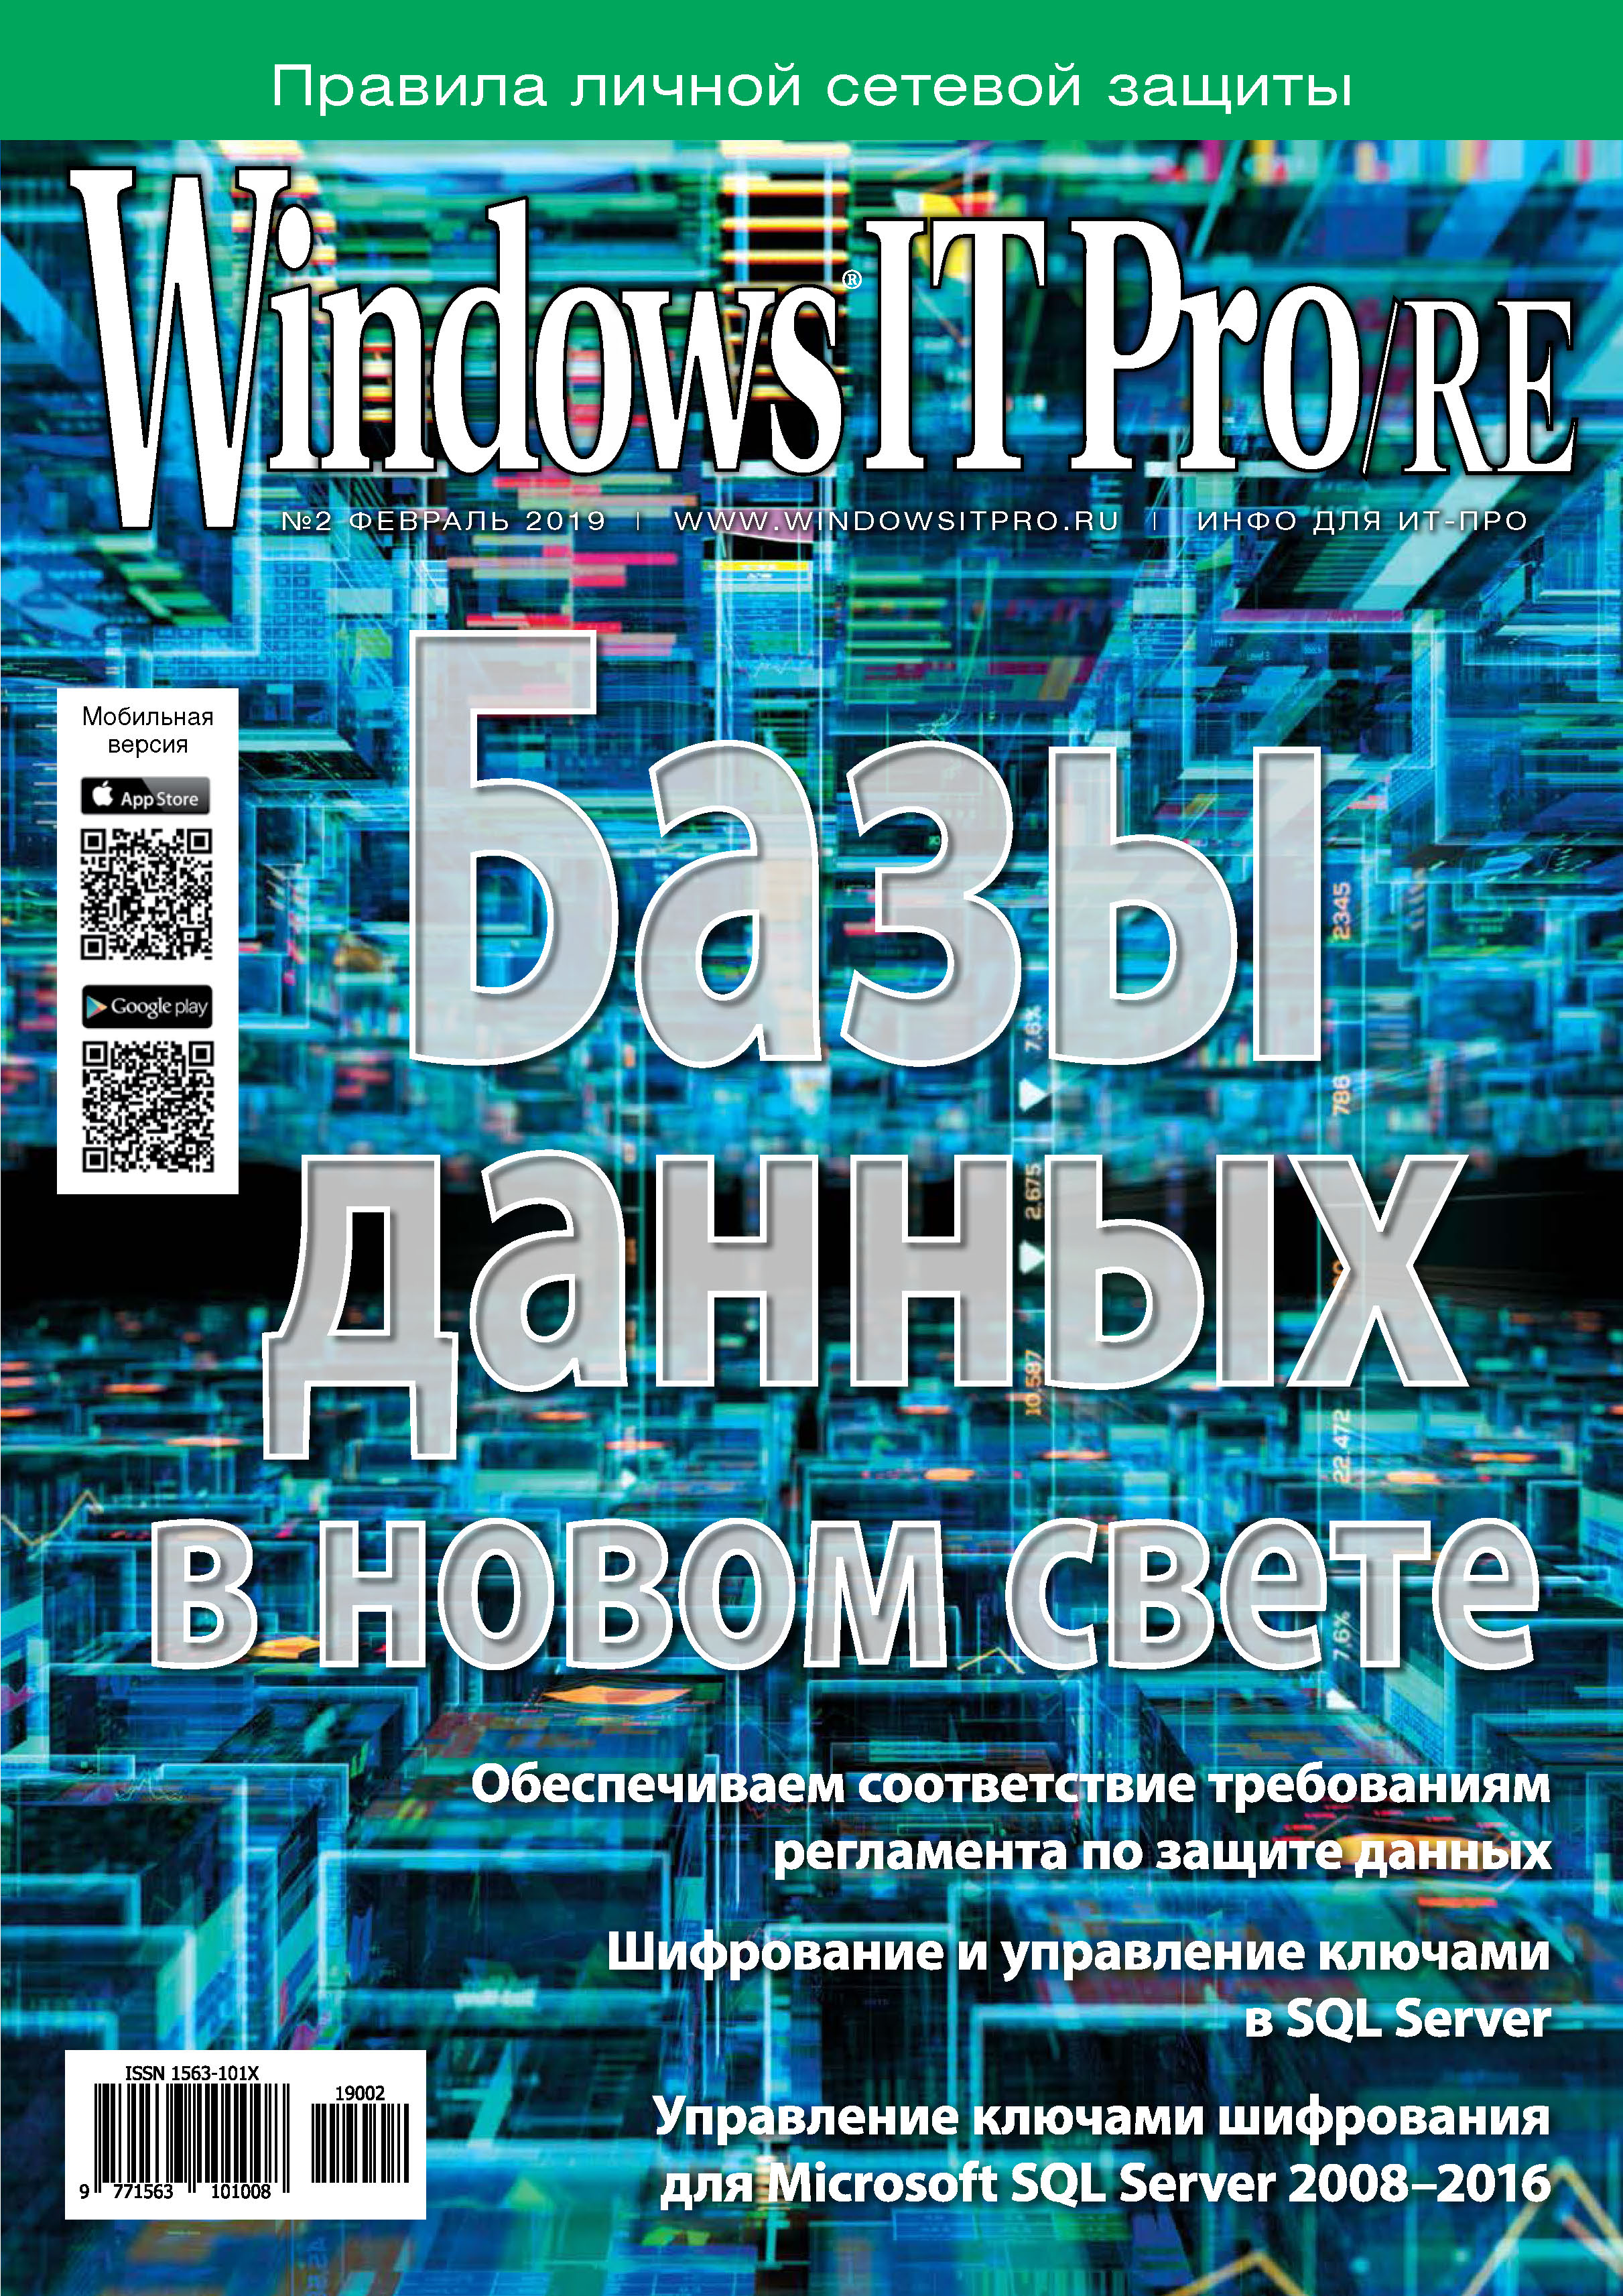 Книга Windows IT Pro 2019 Windows IT Pro/RE №02/2019 созданная Открытые системы может относится к жанру компьютерные журналы, ОС и сети, программы. Стоимость электронной книги Windows IT Pro/RE №02/2019 с идентификатором 40914005 составляет 484.00 руб.